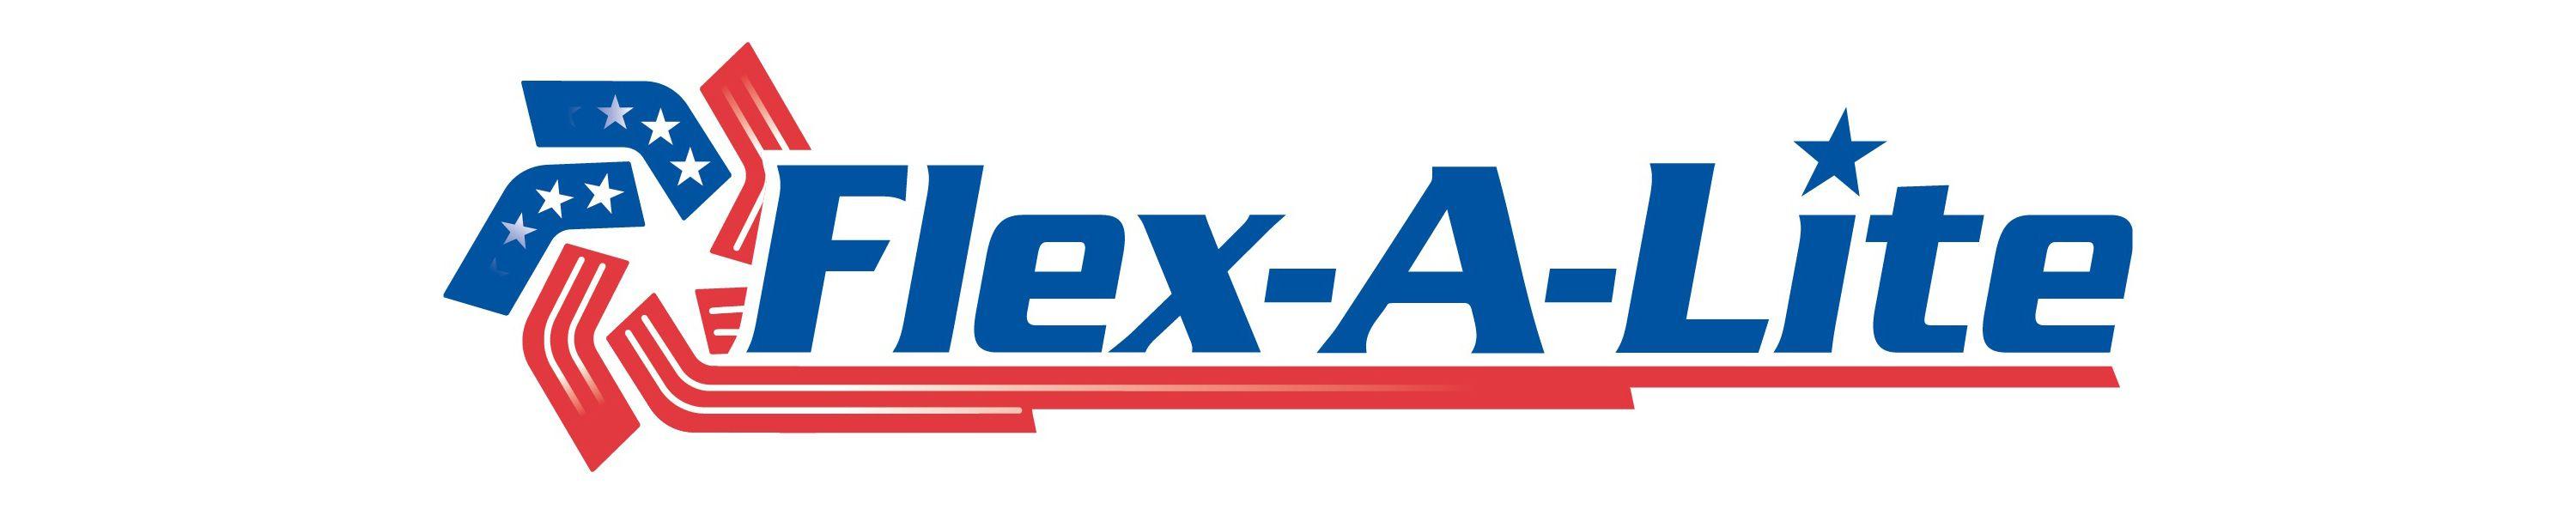 Flex-a-lite Logo - Amazon.com: Flex-a-lite: Radiators